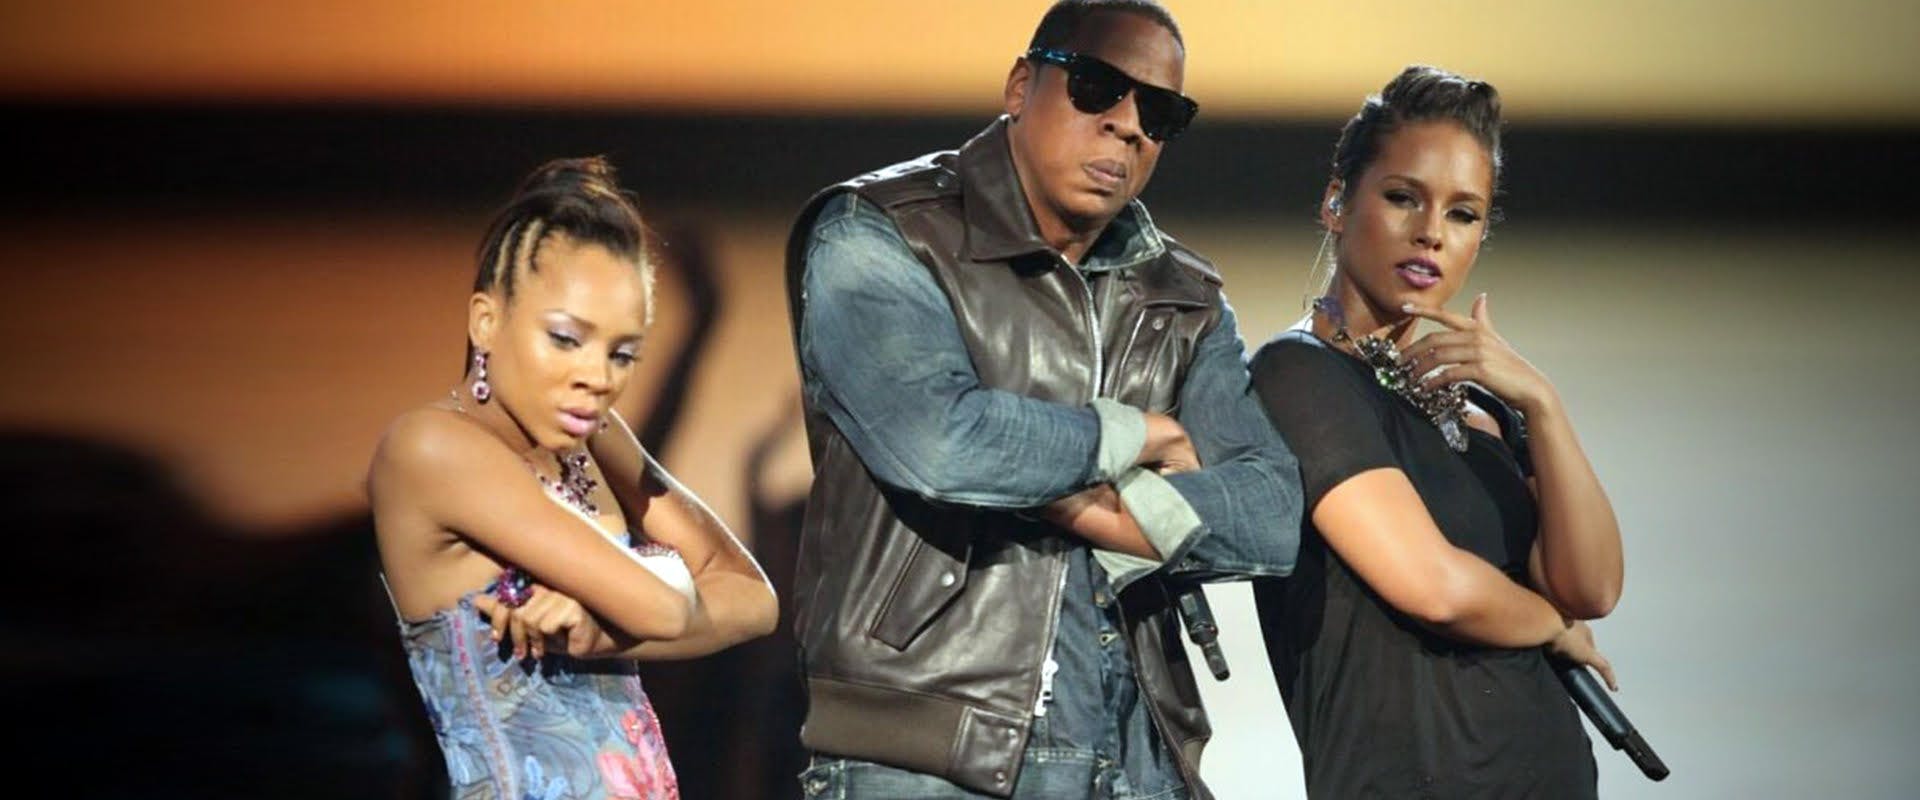 Alicia Keys, Jay-Z, and Lil Mama at 2009 VMAs